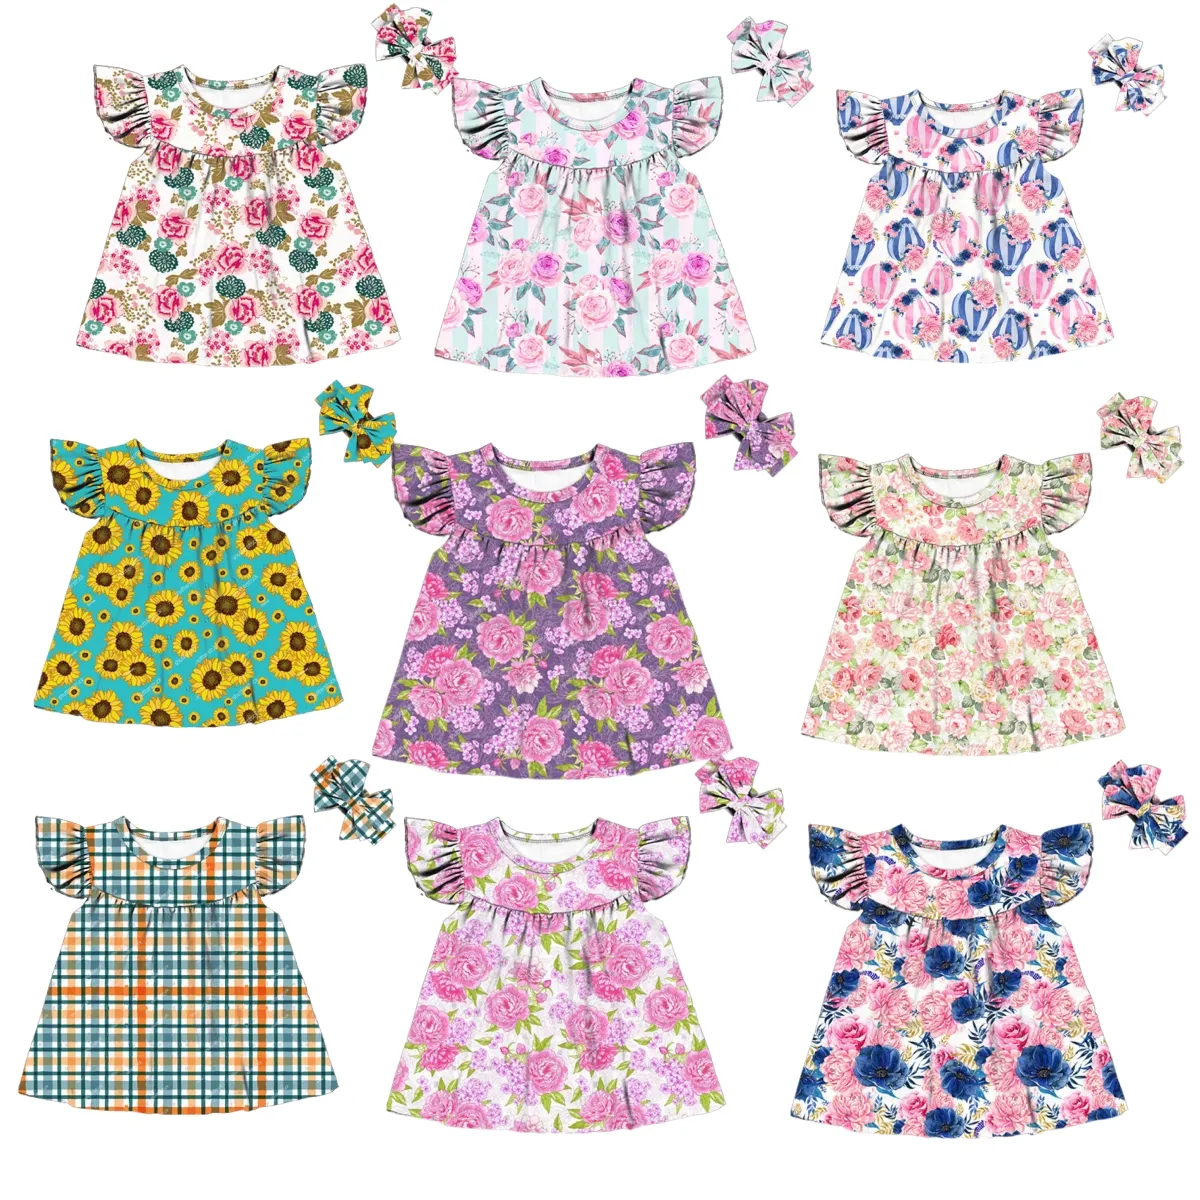 Newbron Kind 0-6t Mädchen Bluse Kinder kurze flattern Bluse Designs Kinder Mädchen Tops für Kinder Mädchen Bluse